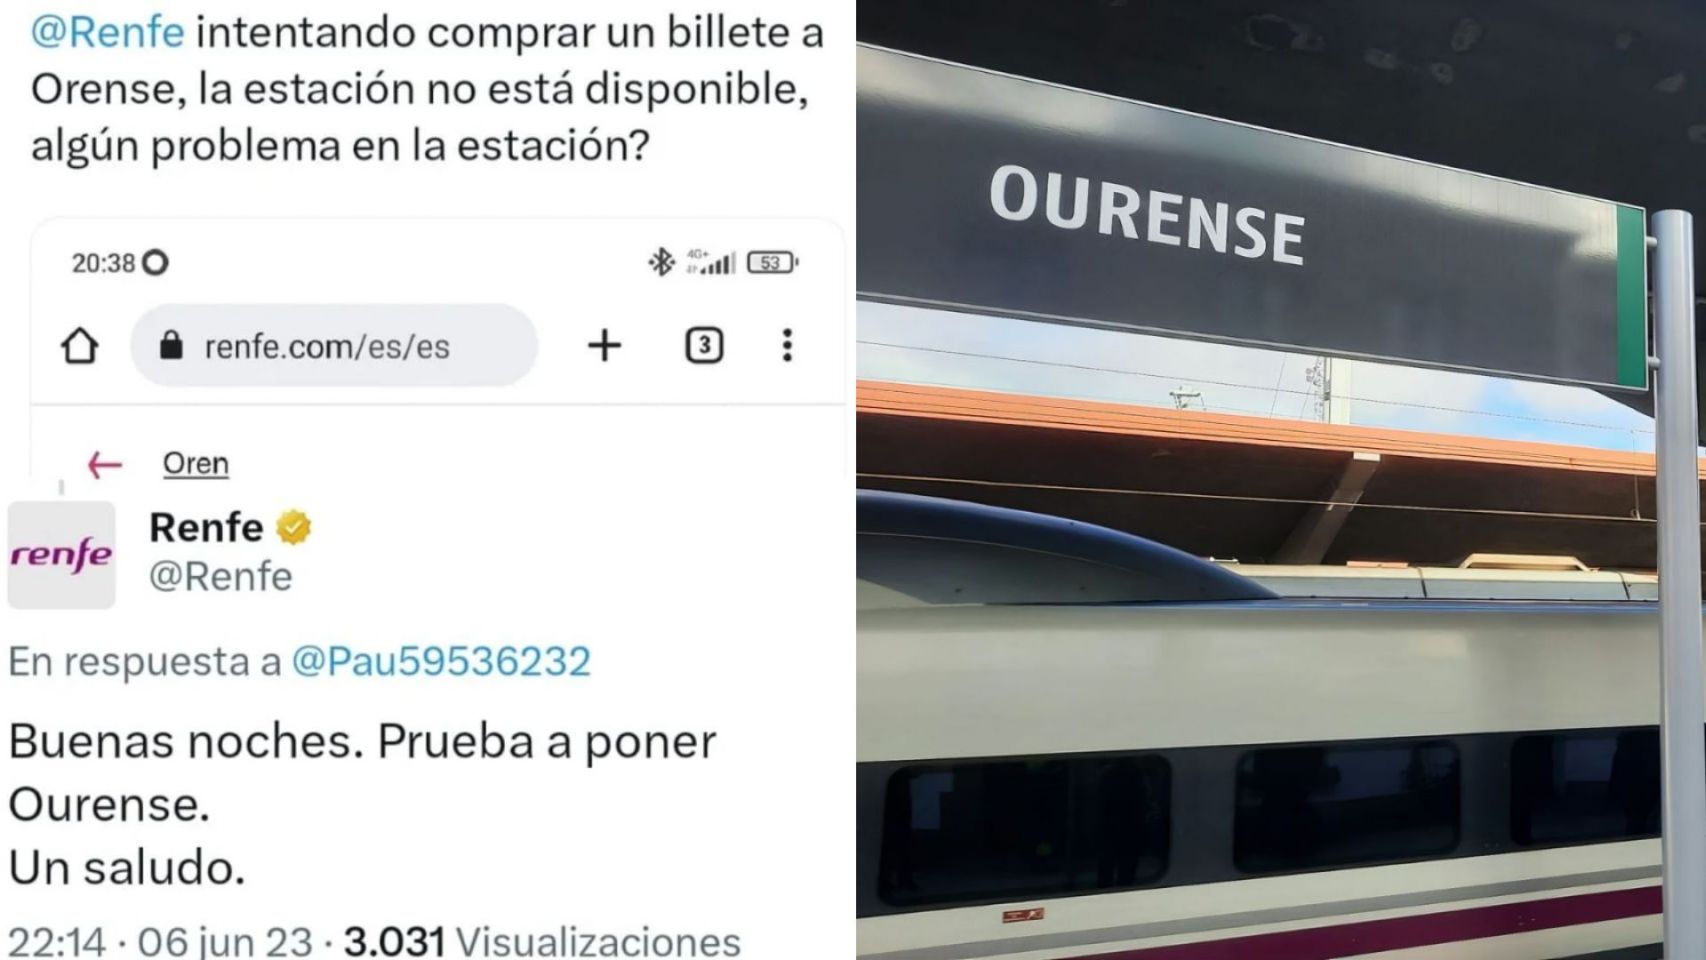 Respuesta de Renfe en Twitter y el cartel de la estación de Ourense.